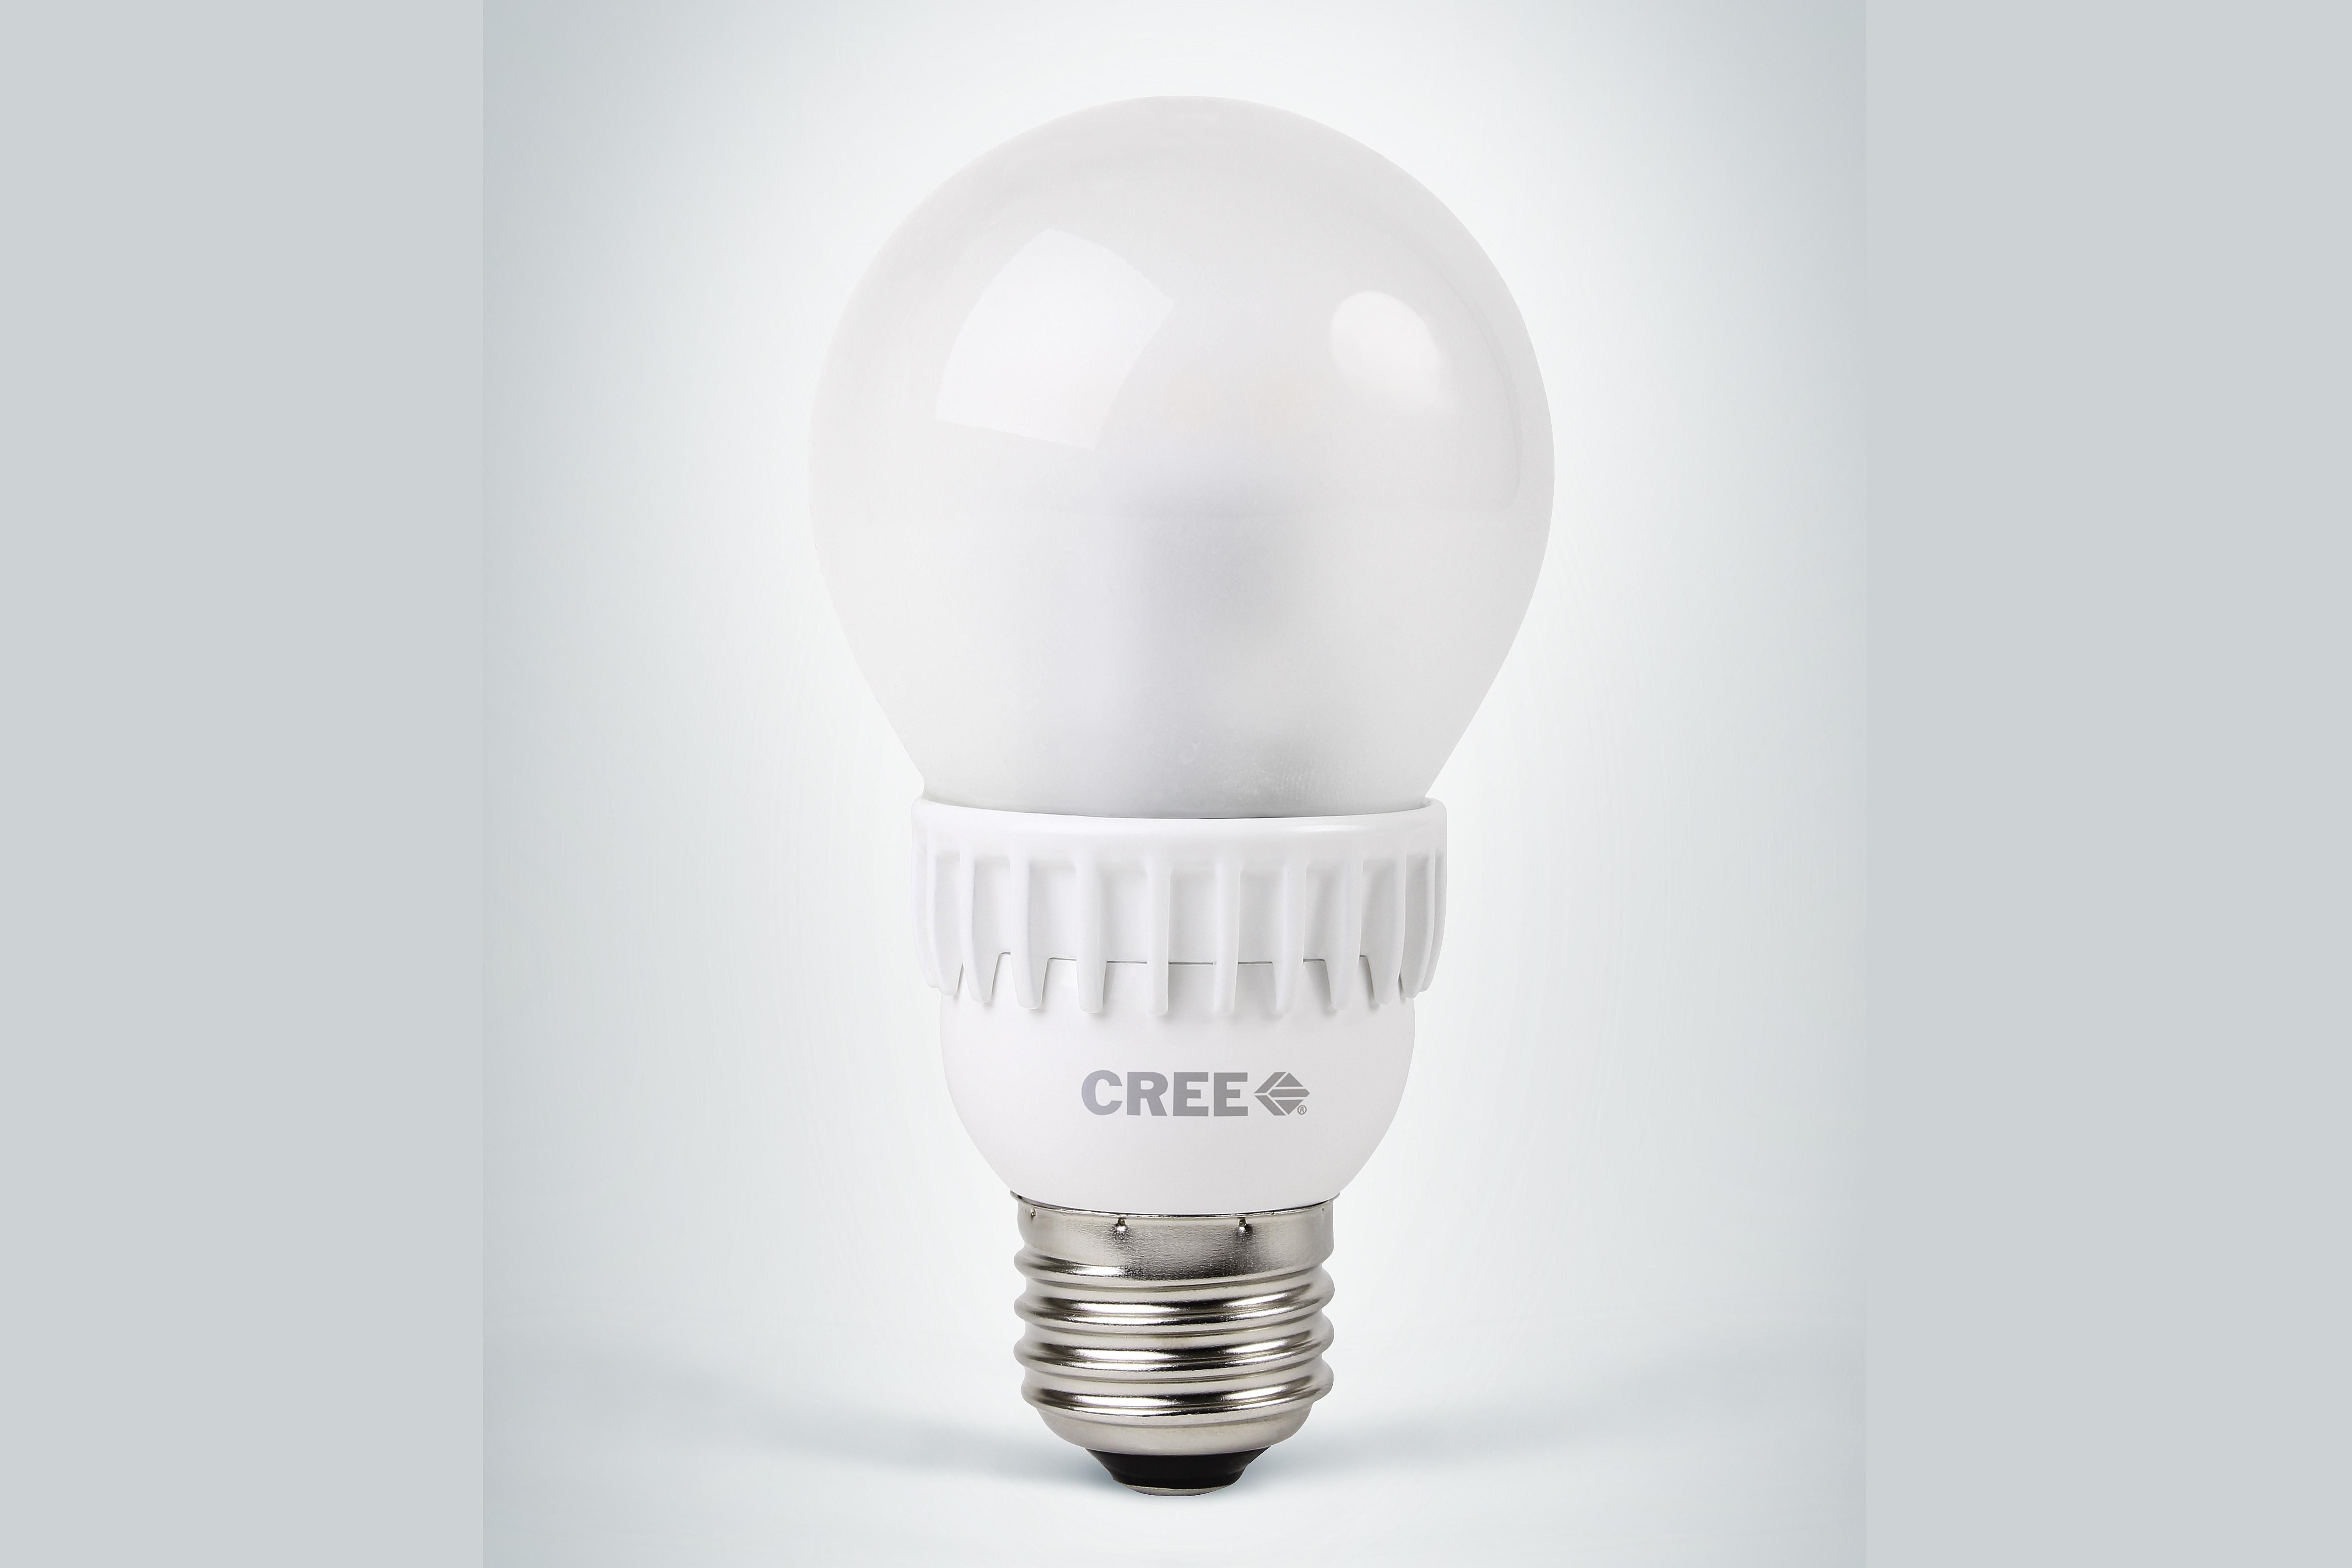 Overview of New LED vs 60 Watt Light Bulbs